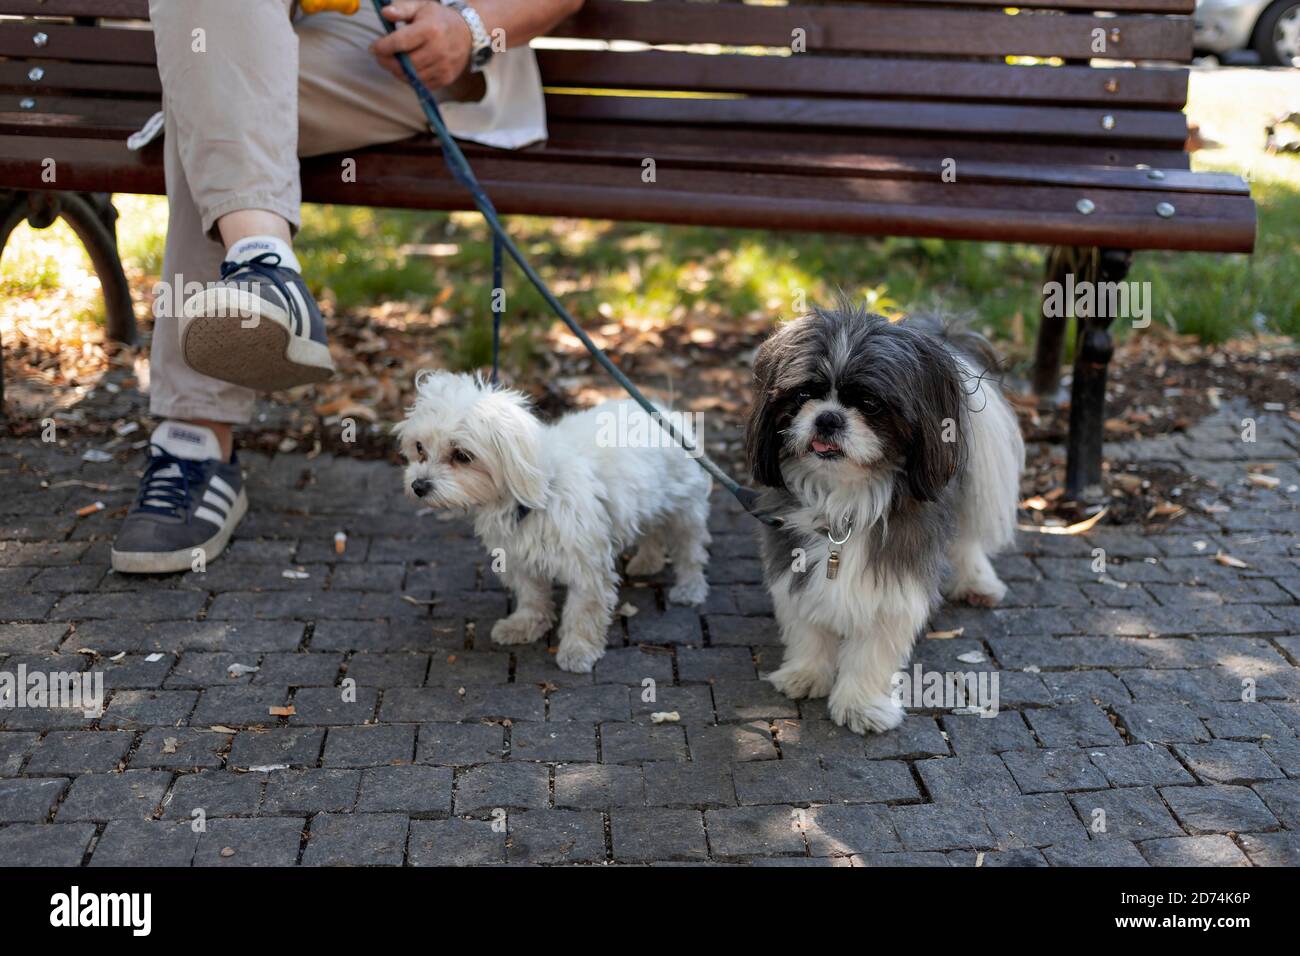 Belgrad, Serbien, 2. August 2020: Mann mit zwei Hunden sitzt auf einer Bank im Park Stockfoto